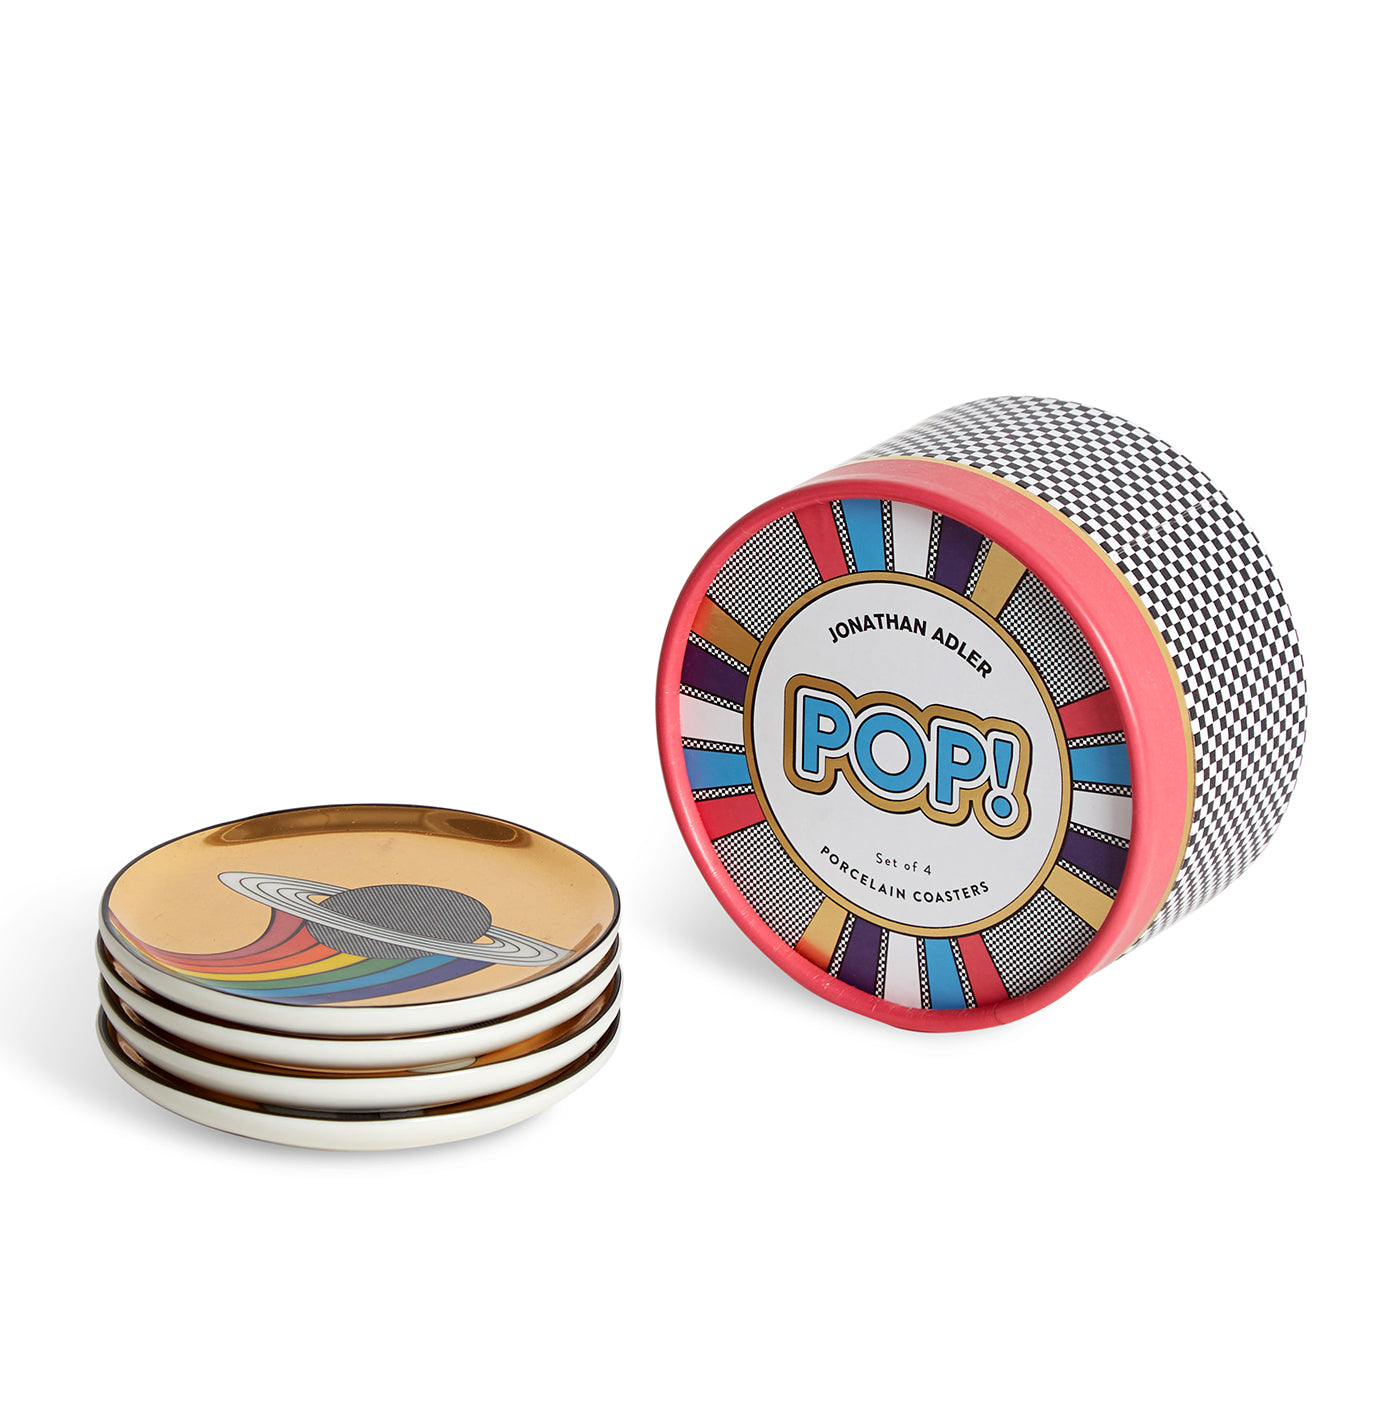 POP! Rainbow Coasters S/4 by Jonathan Adler